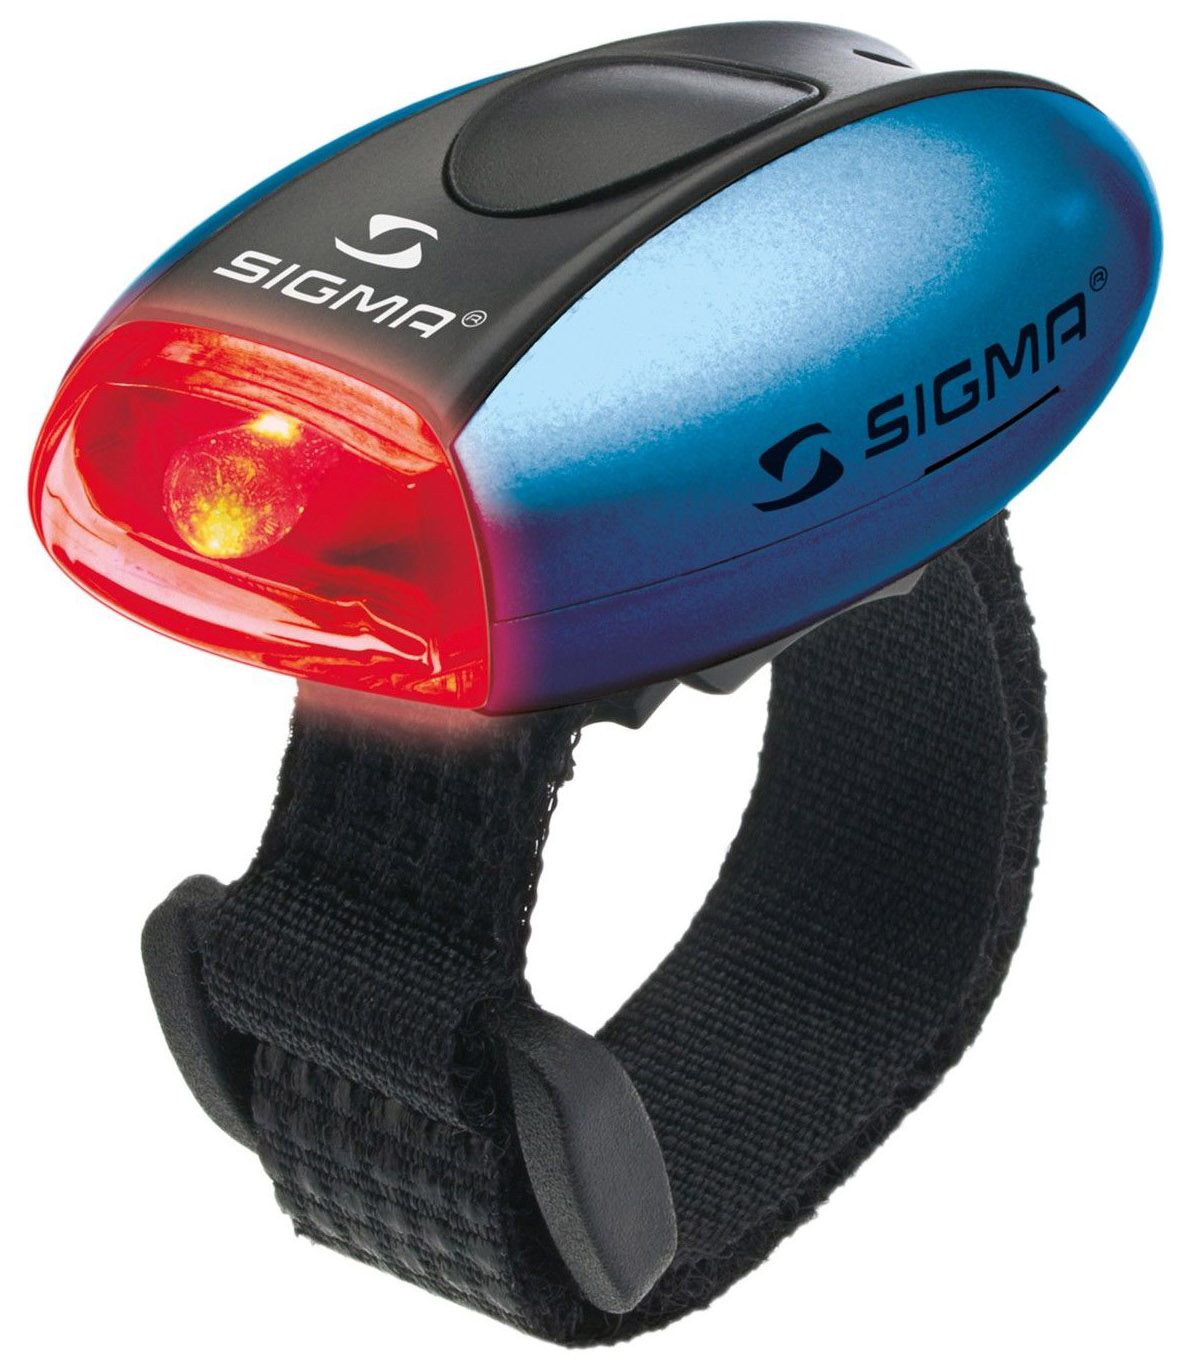  Задний фонарь для велосипеда SIGMA Micro R